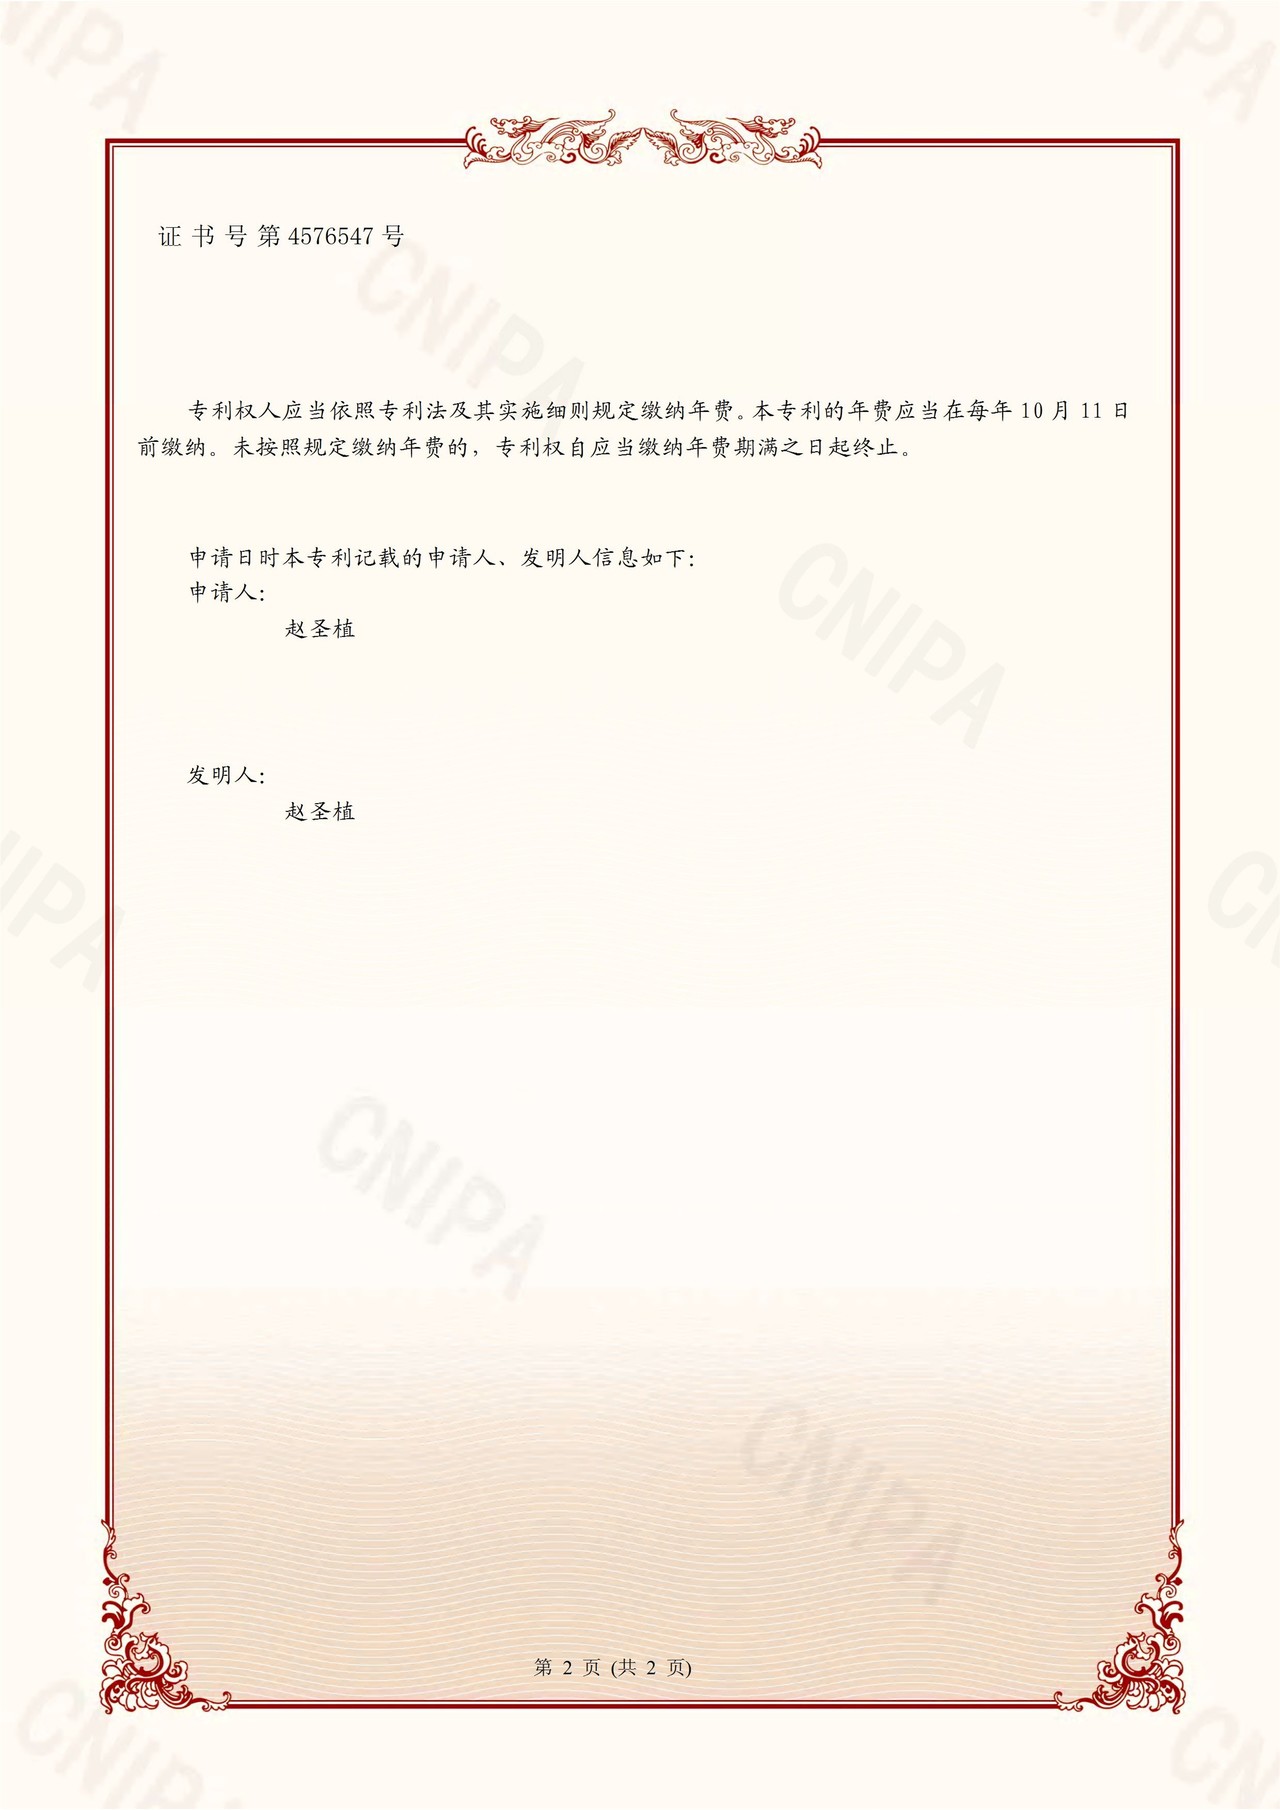 중국 특허번호 ZL201811184460.9